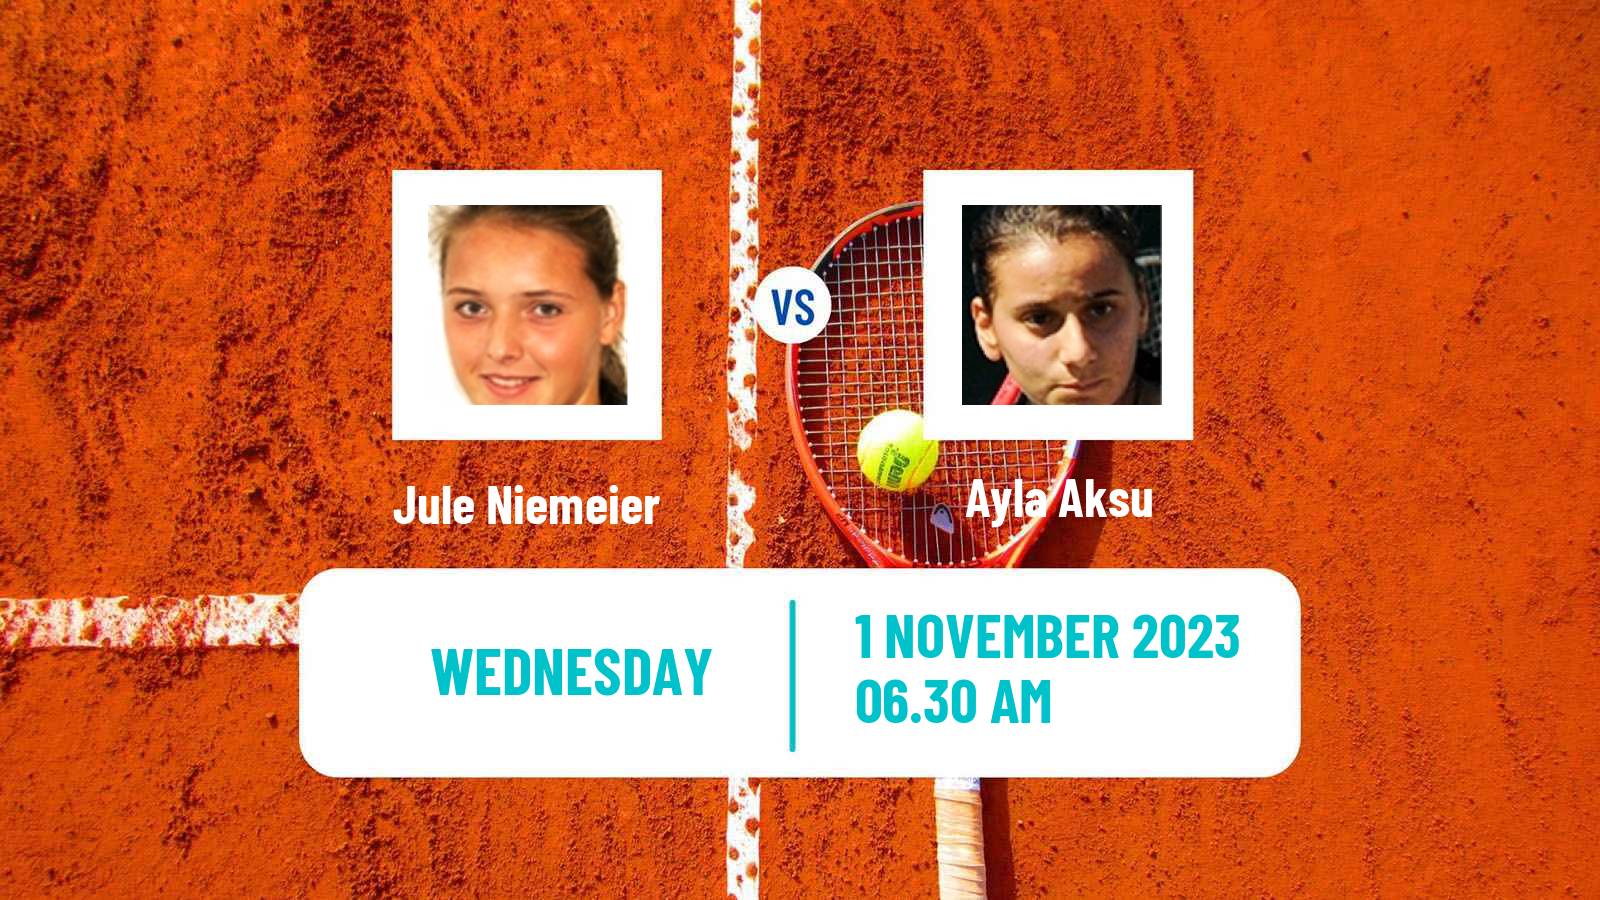 Tennis ITF W60 Bratislava Women Jule Niemeier - Ayla Aksu